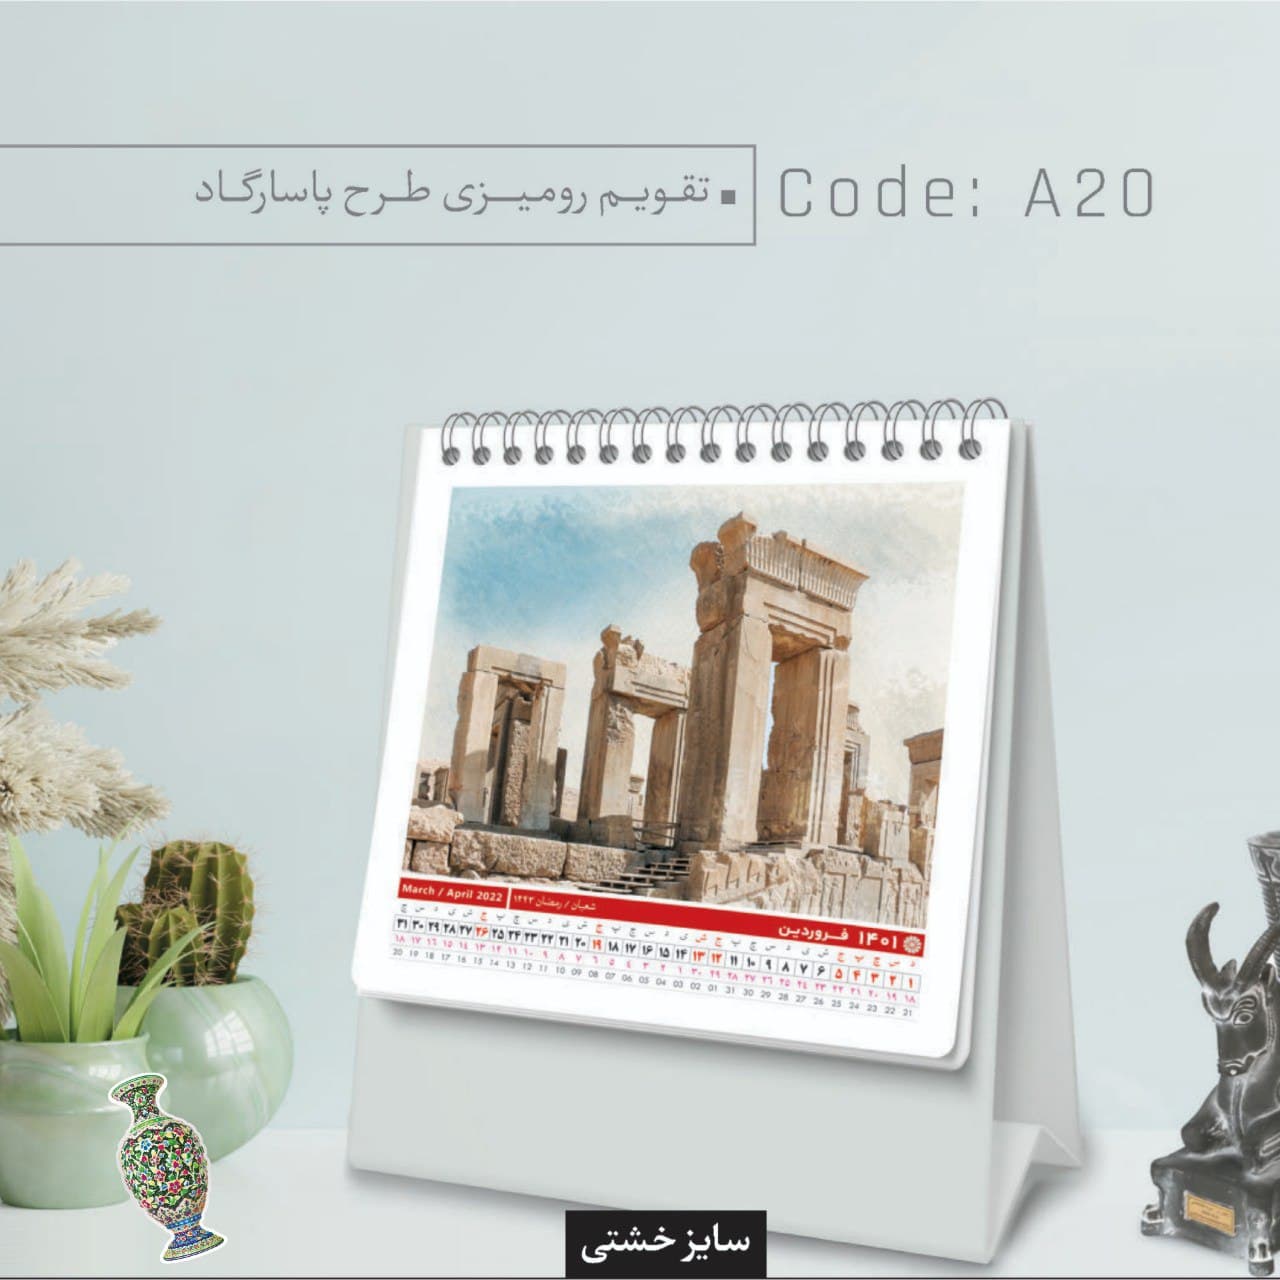 تقویم رومیزی طرح پاسارگاد کد A20 - گروه تبلیغاتی ایران هنر